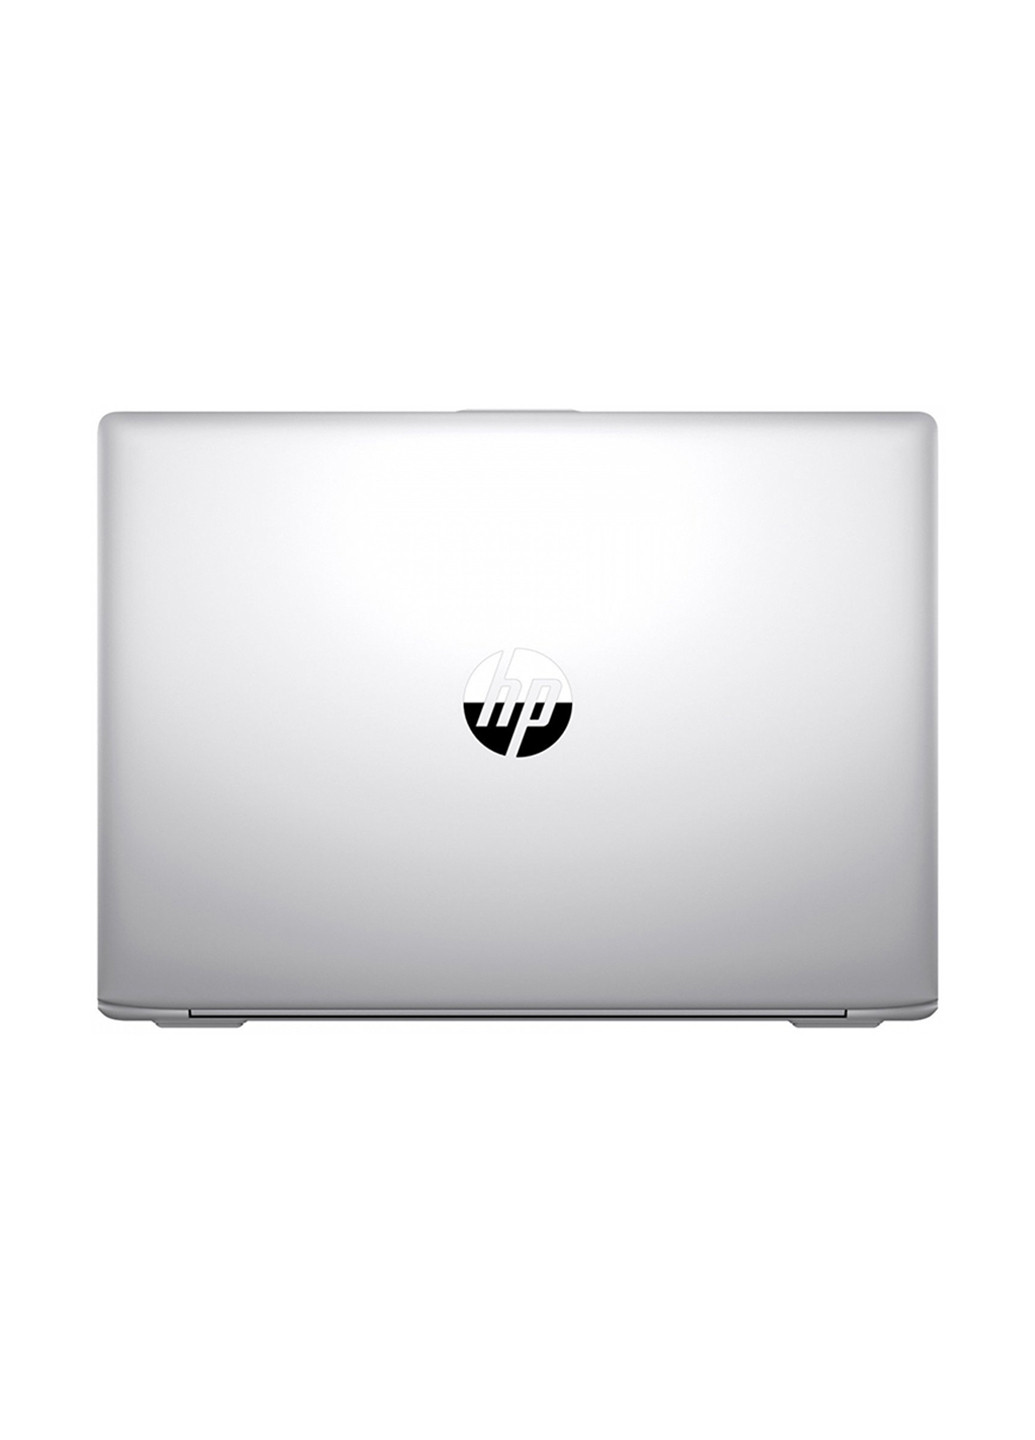 Ноутбук HP probook 430 g5 (2xz62es) silver (136402394)